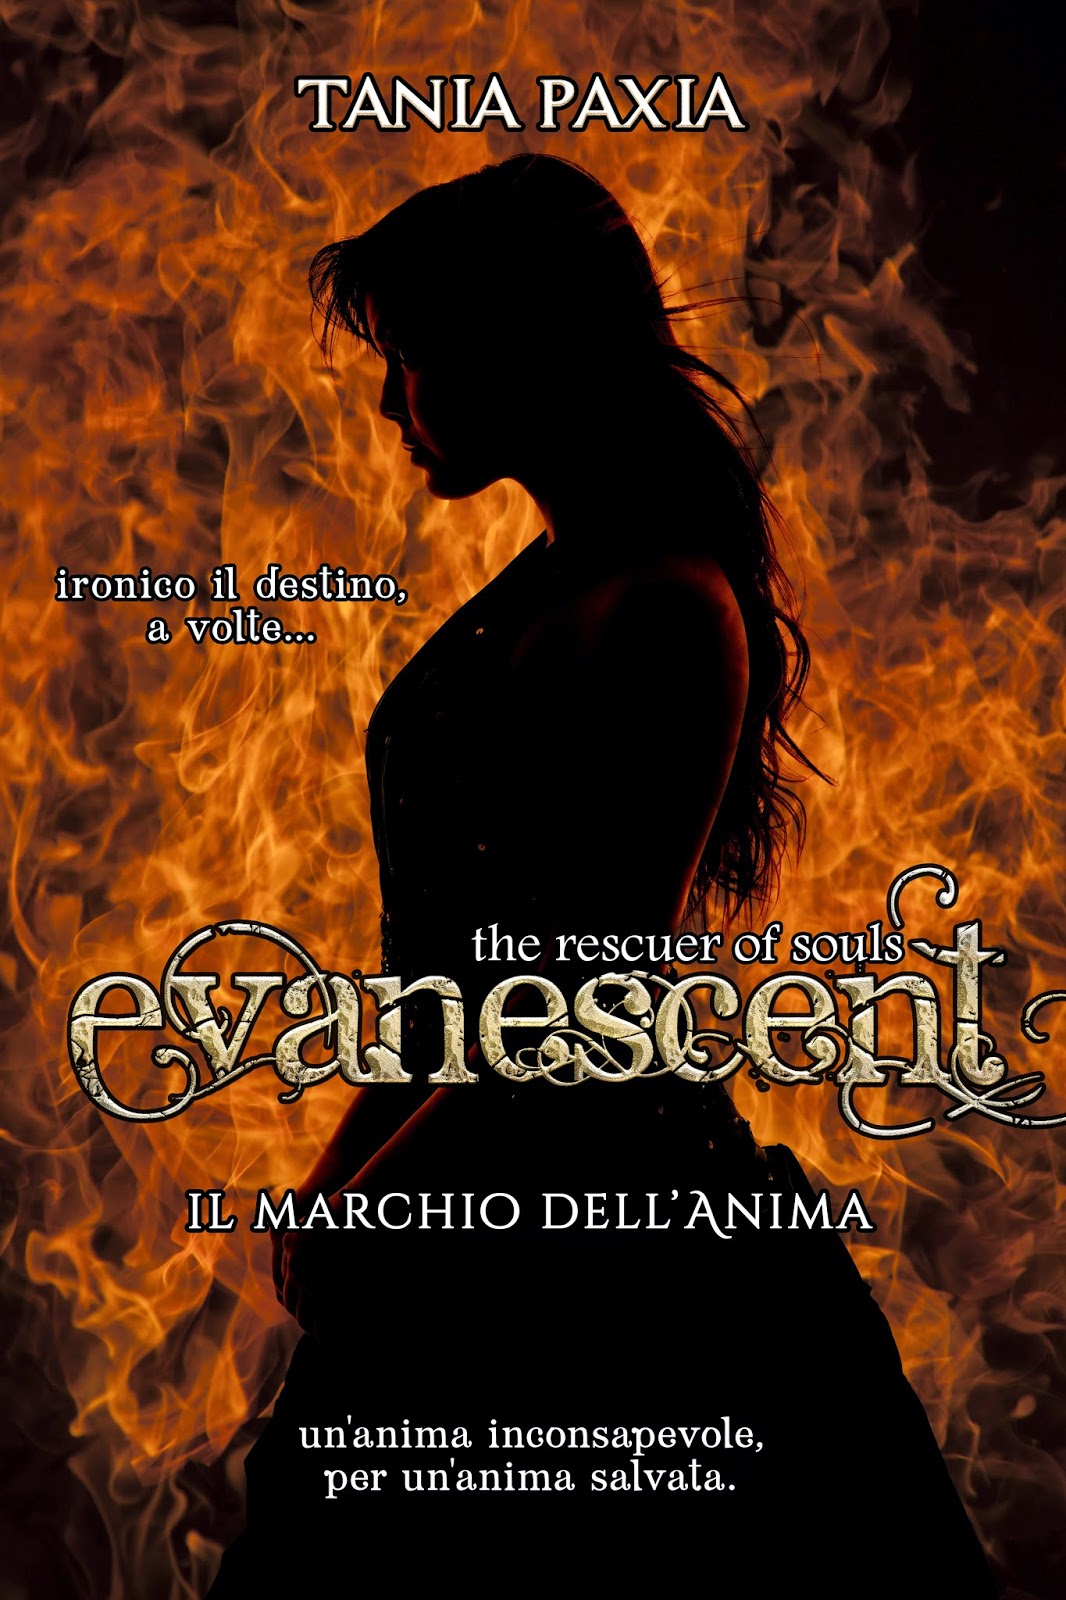 http://www.amazon.it/Il-Marchio-dellAnima-Evanescent-Rescuer-ebook/dp/B00S17VEXG